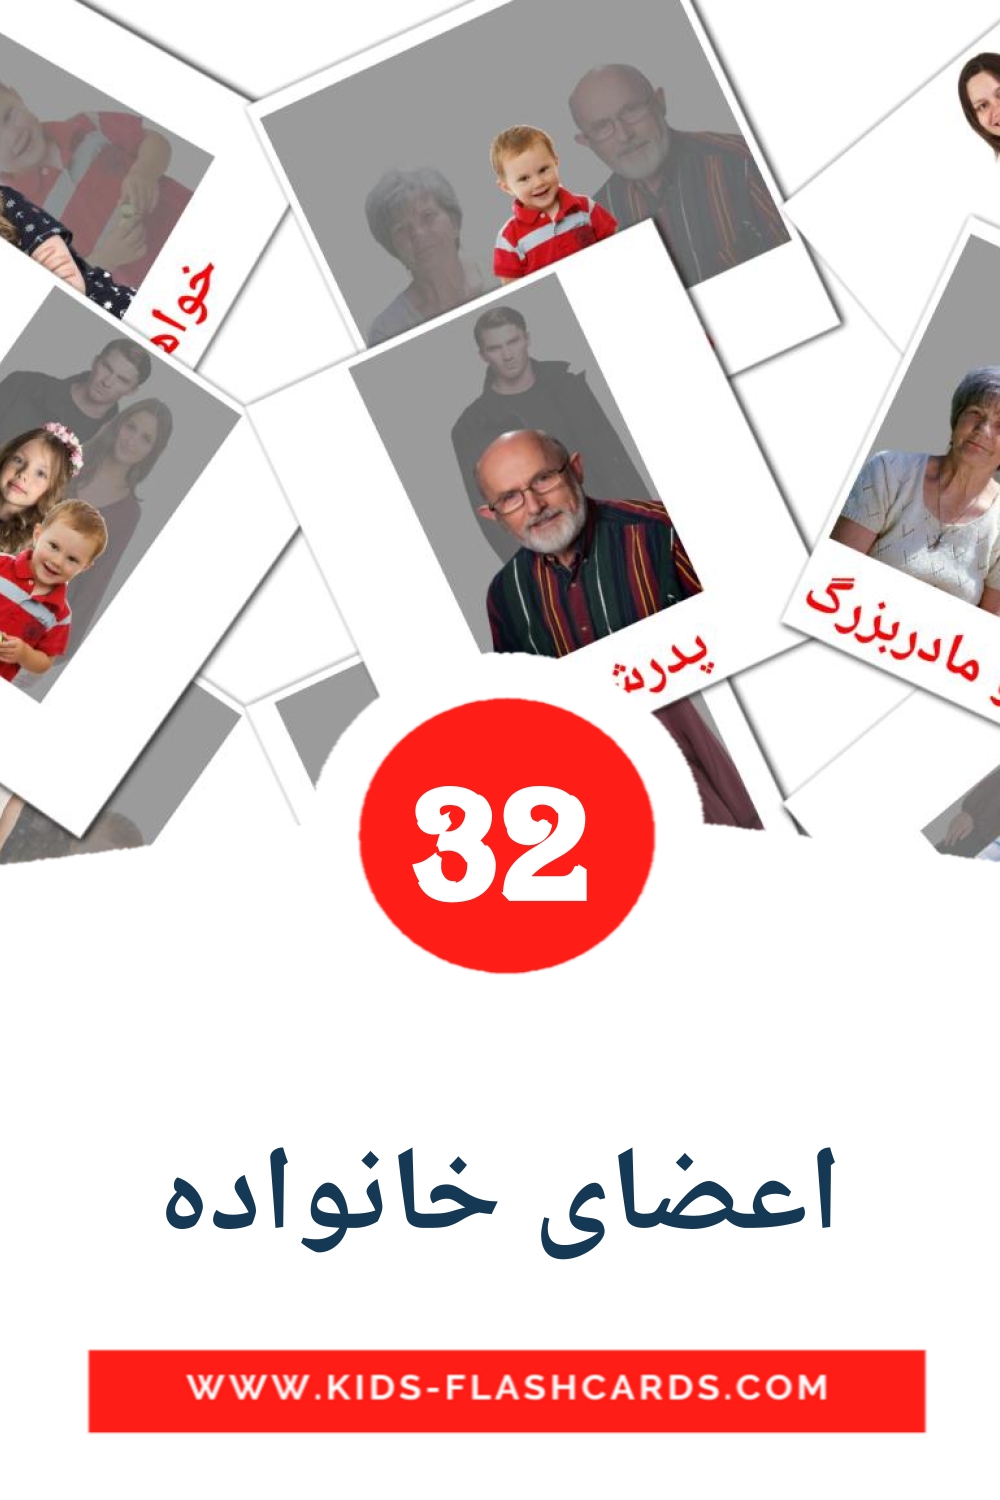 32 cartes illustrées de اعضای خانواده pour la maternelle en persan